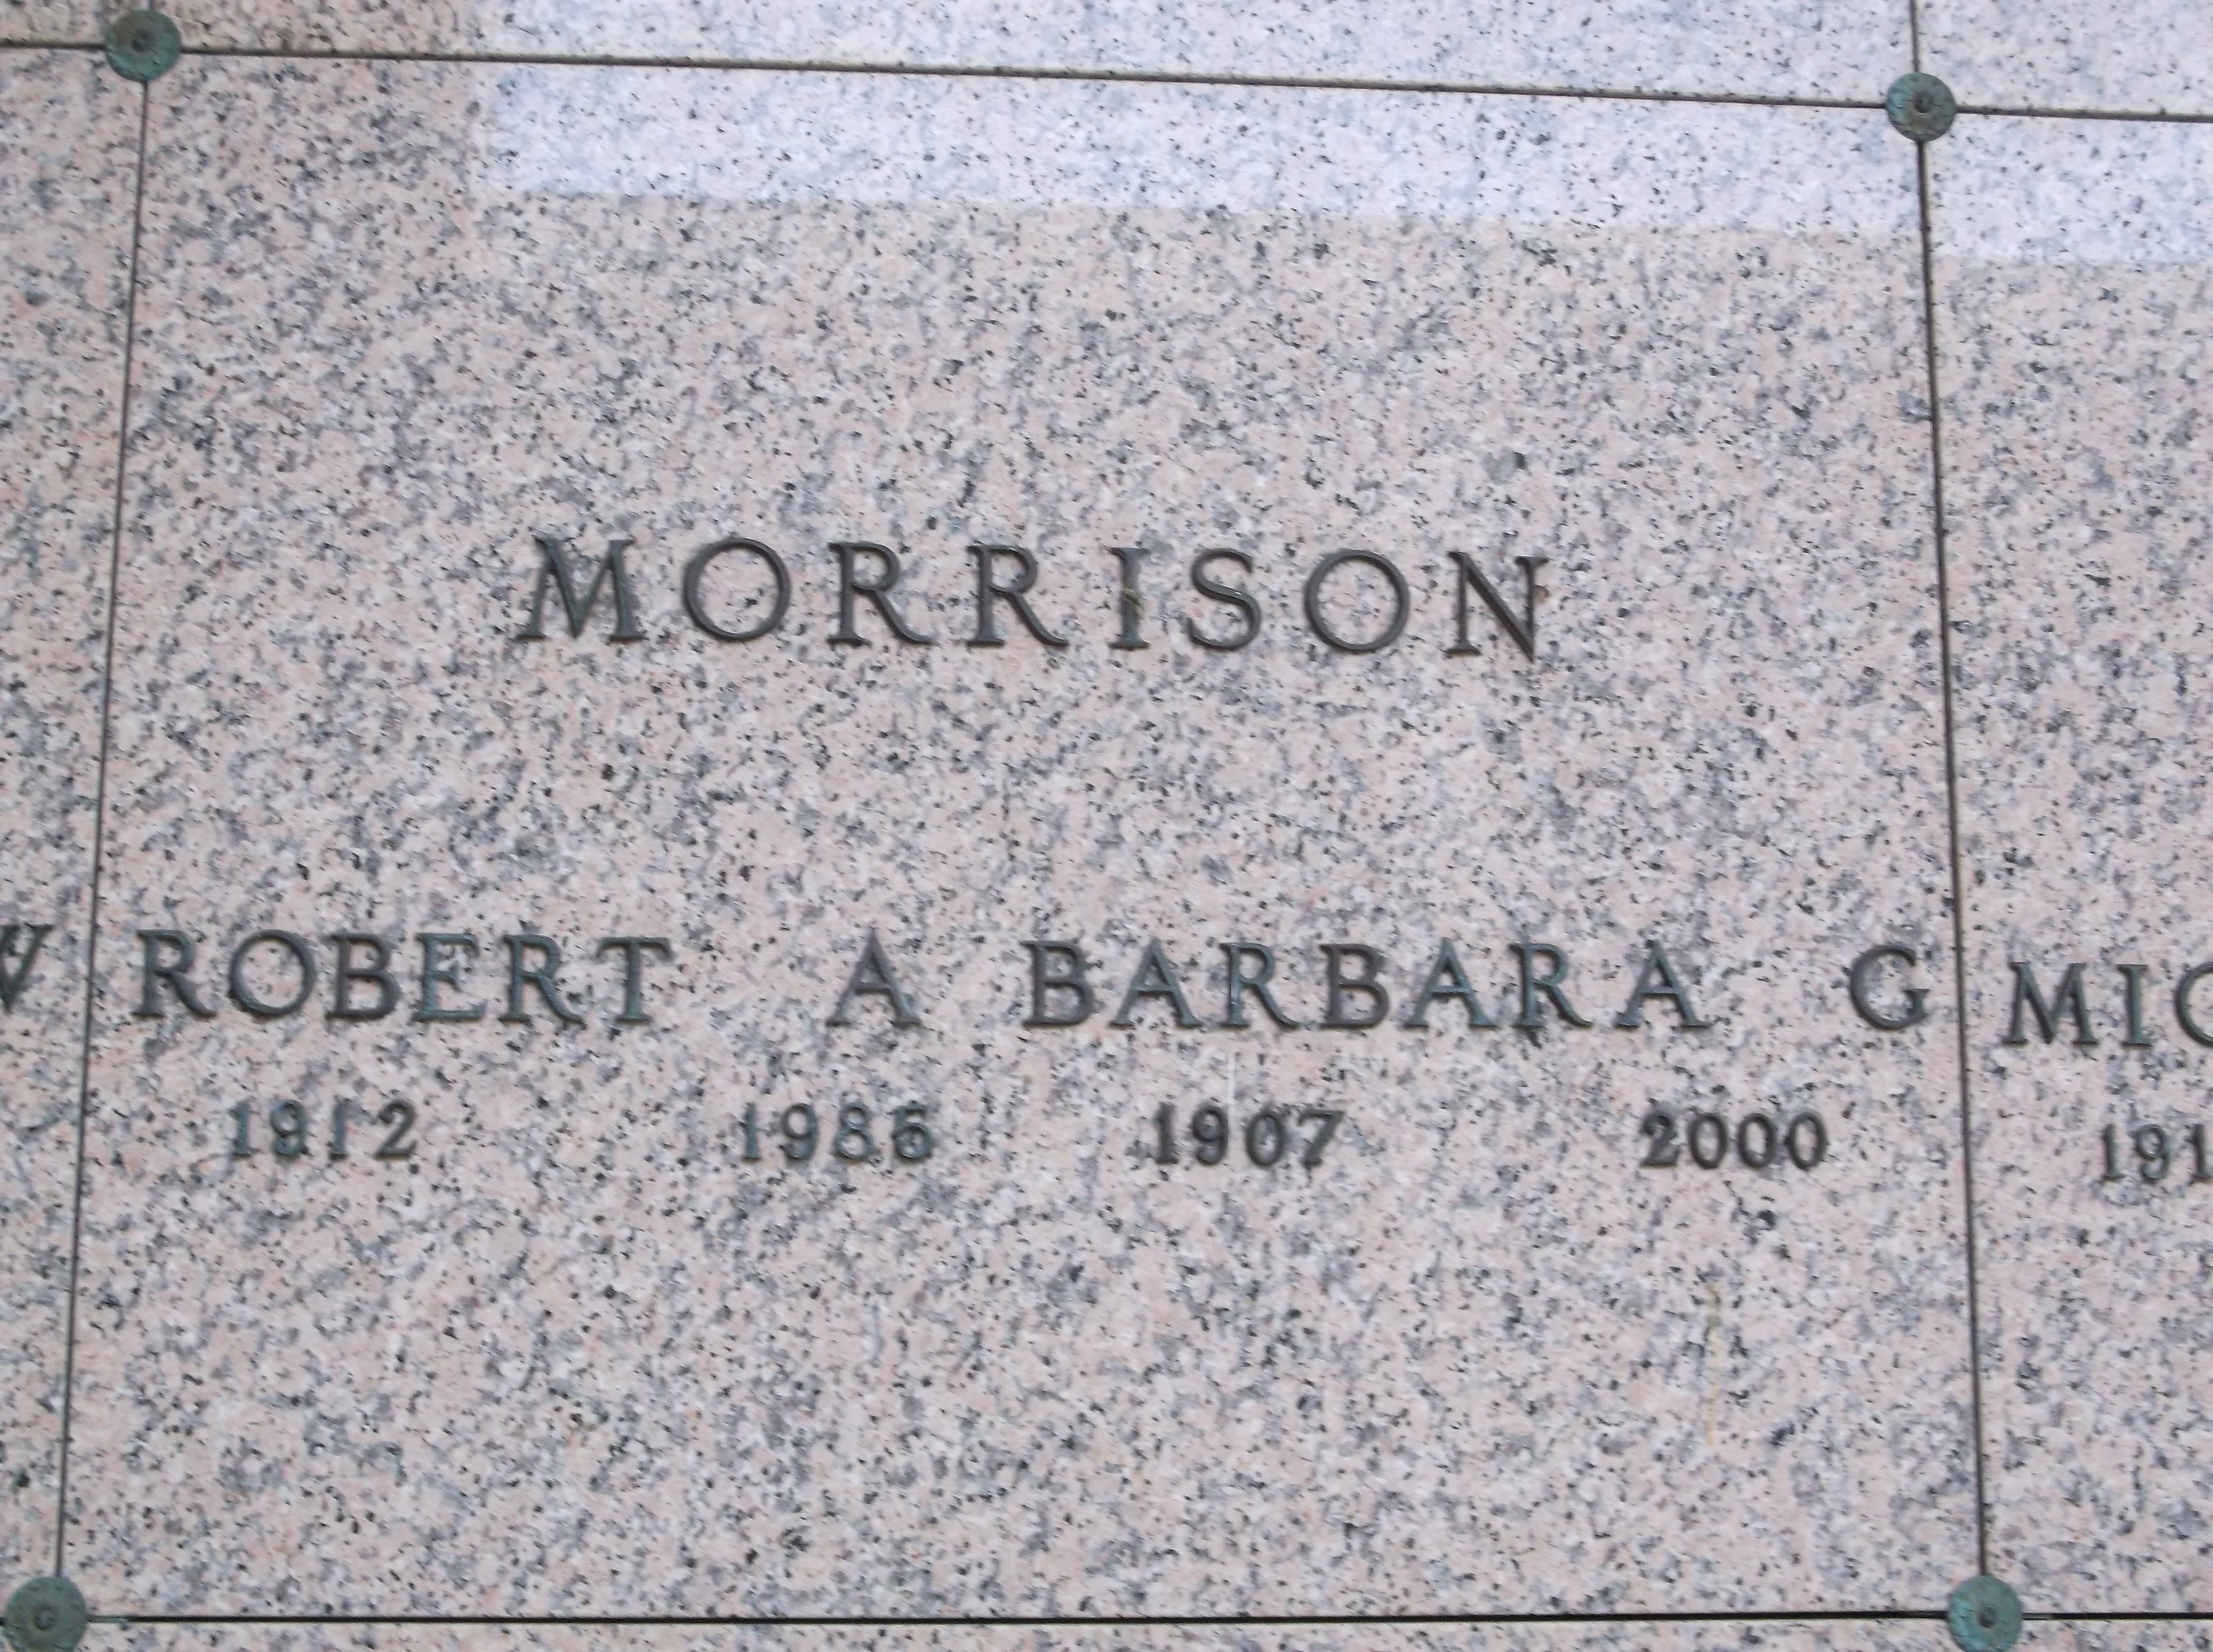 Robert A Morrison